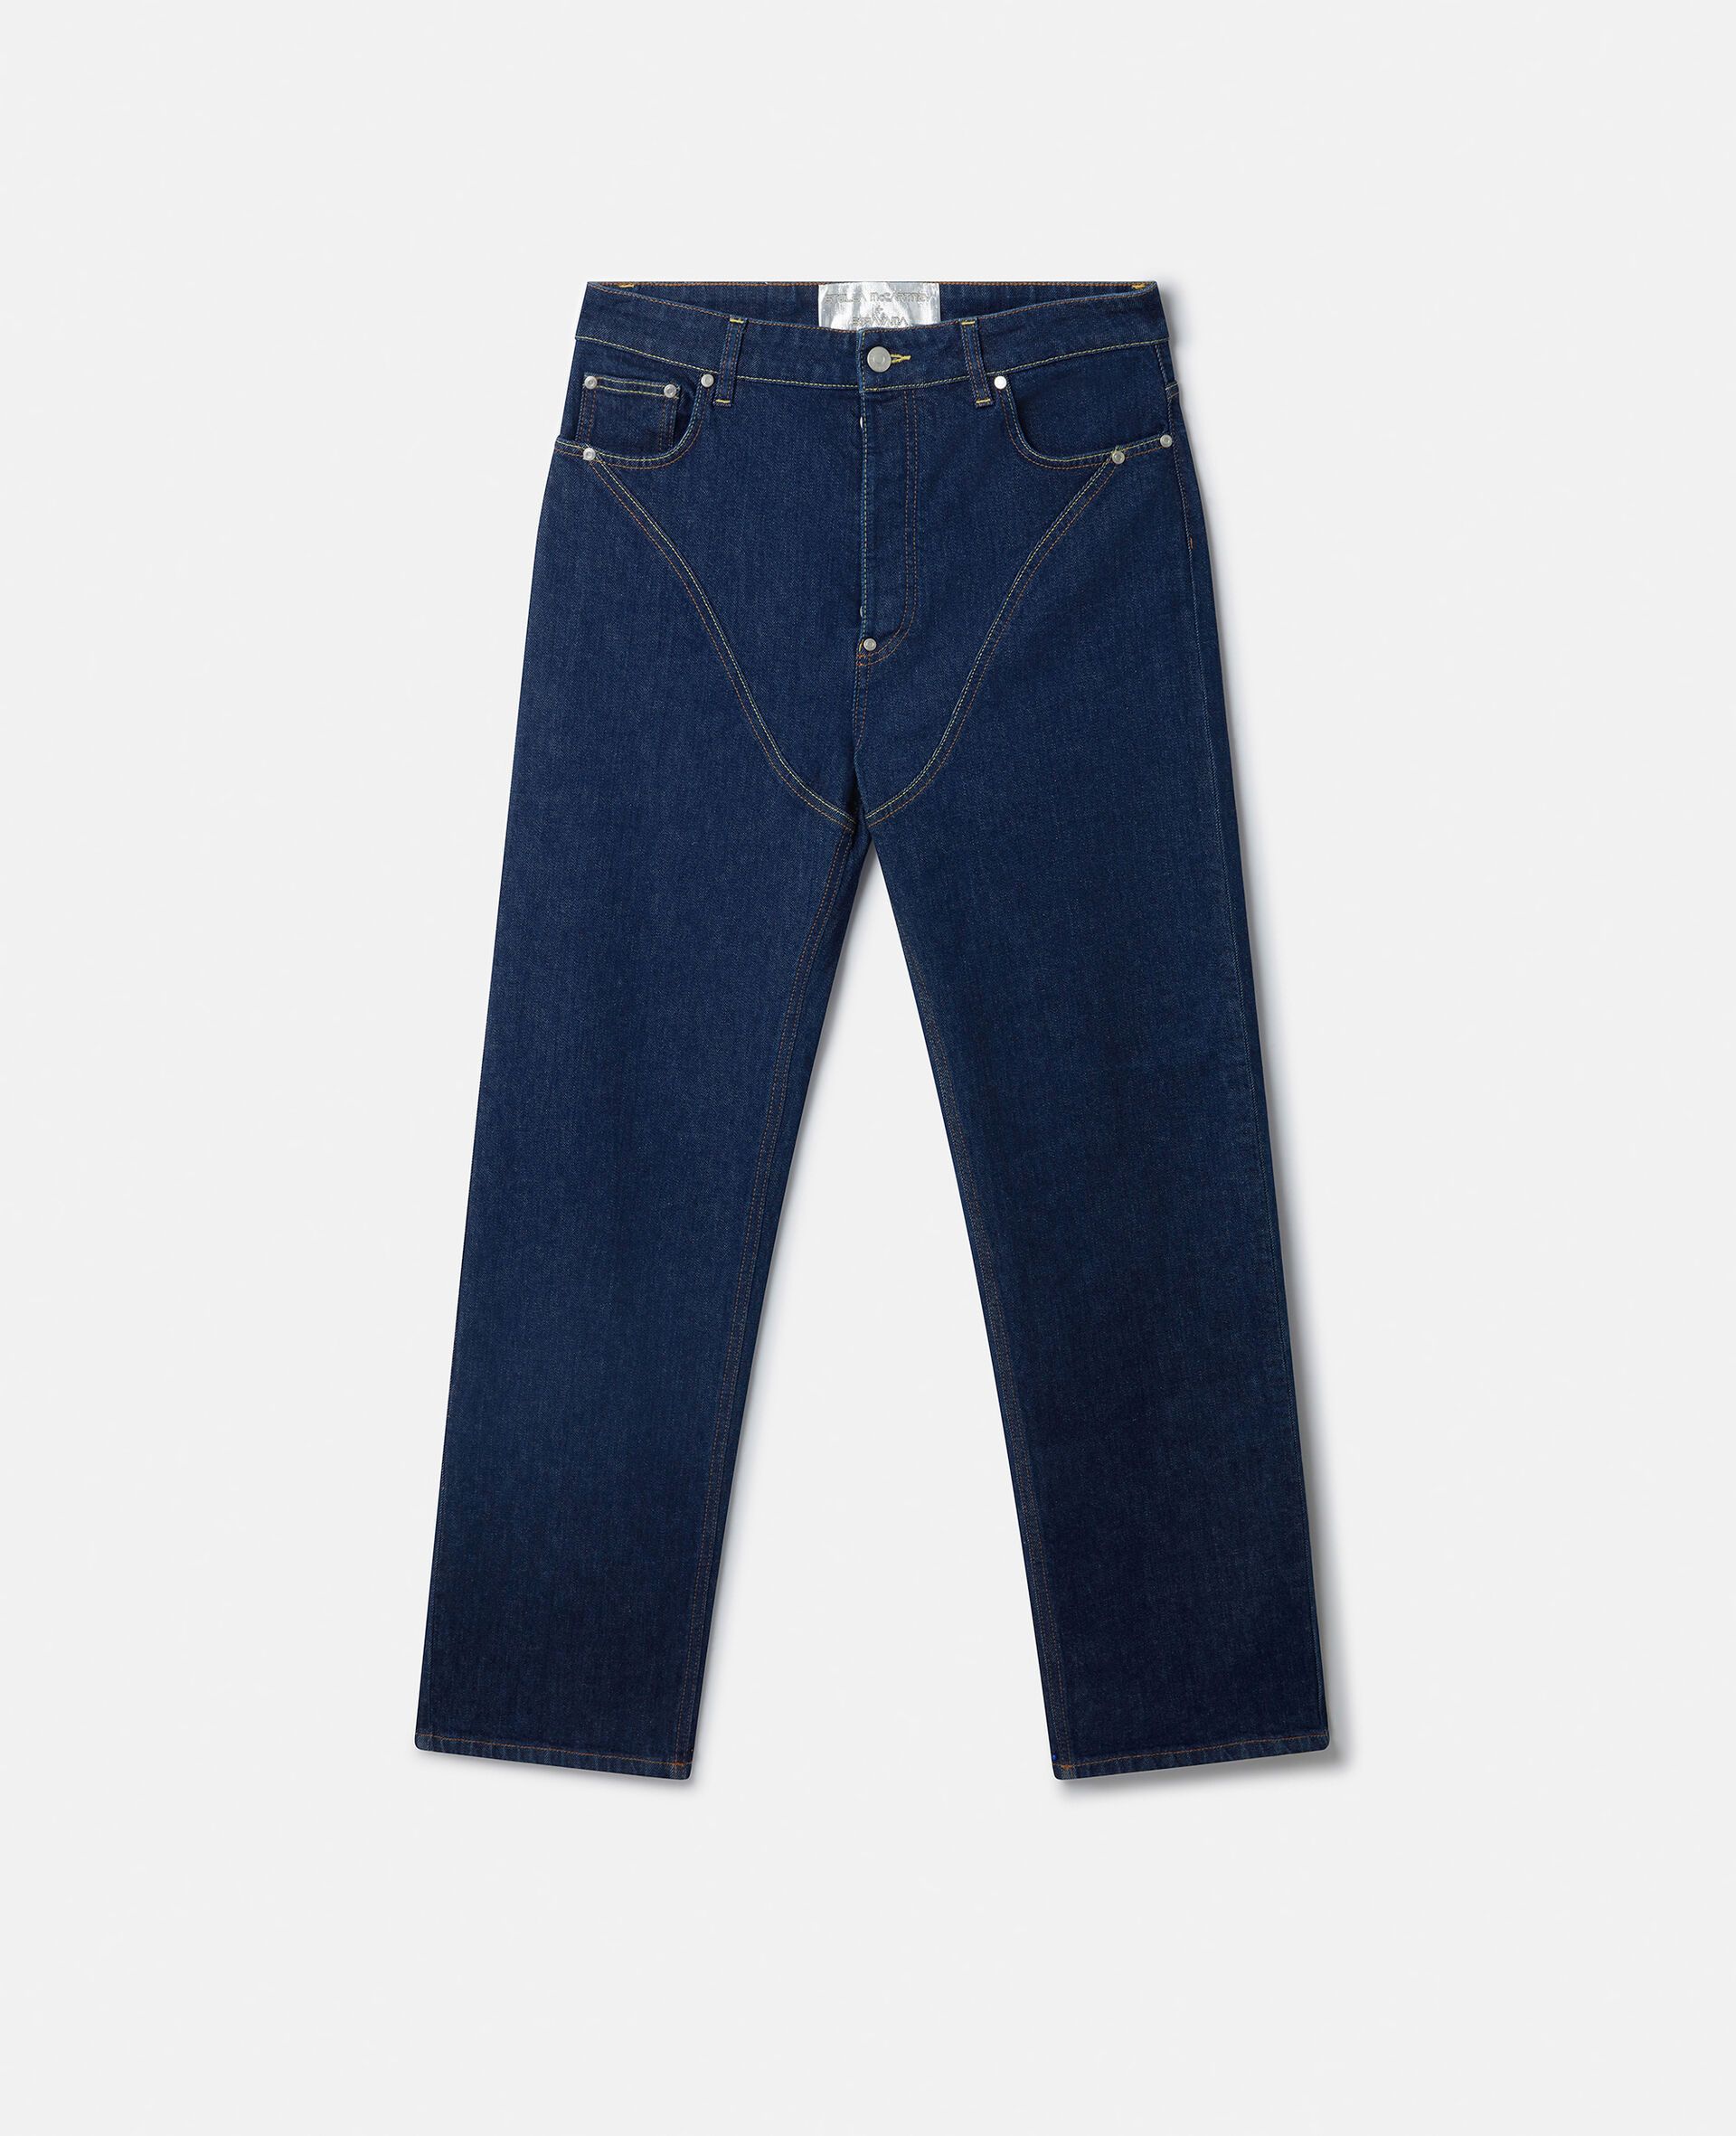 Platinum Dream Jeans mit mittelhohem Bund, geradem Hosenbein und Stickerei-Blau-large image number 0